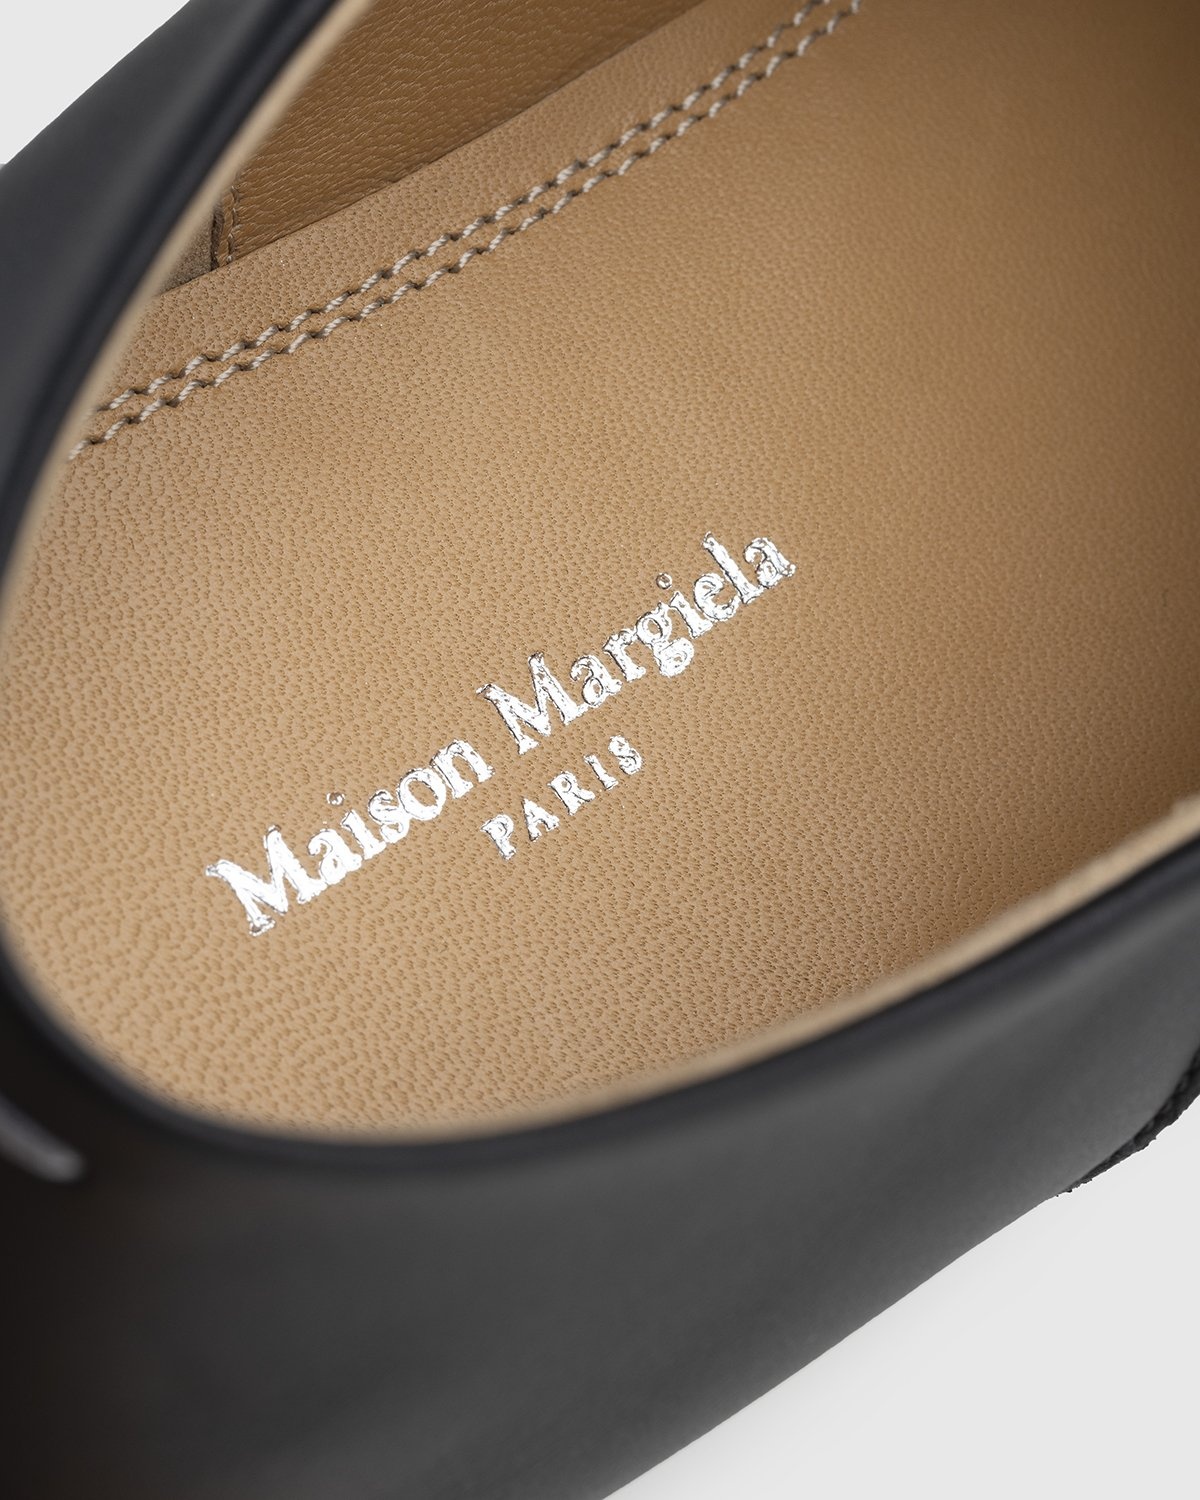 Maison Margiela – Tabi Slip On Black - Shoes - Black - Image 9